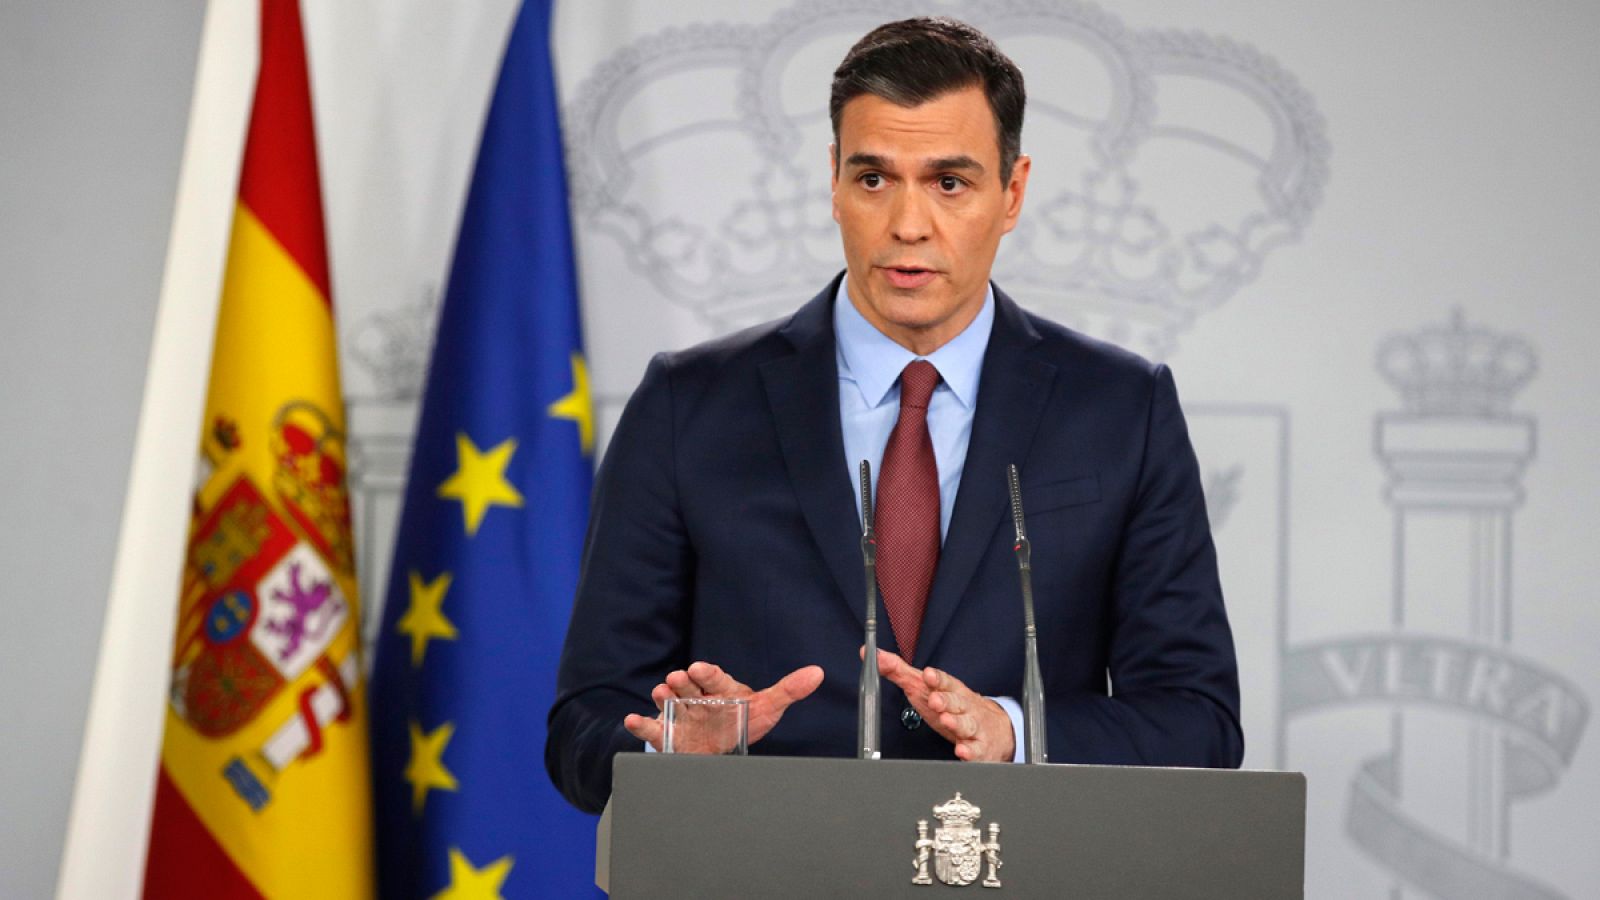 Coronavirus: Pedro Sánchez promete medidas "contundentes" para proteger el empleo y la liquidez de las empresas